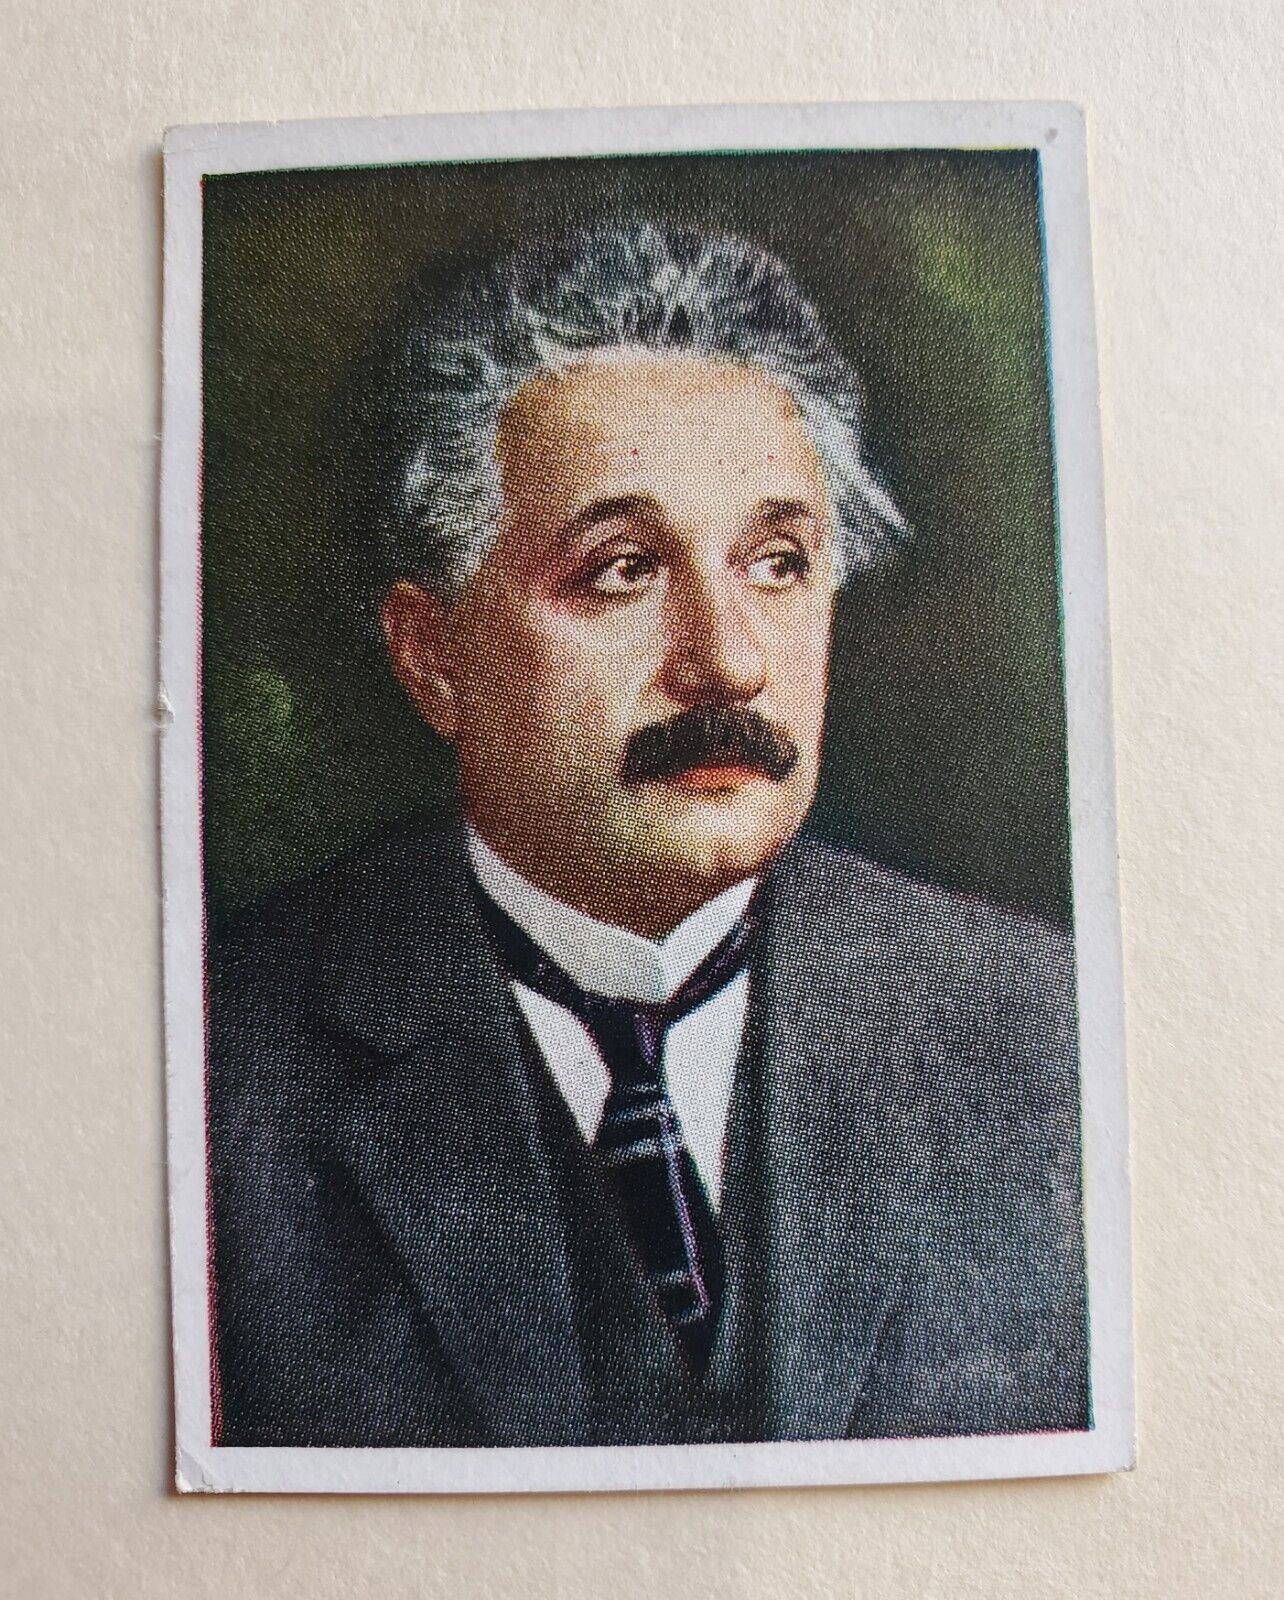 1928 Die Welt In Bildern Professor Albert Einstein Jasmatzi Back